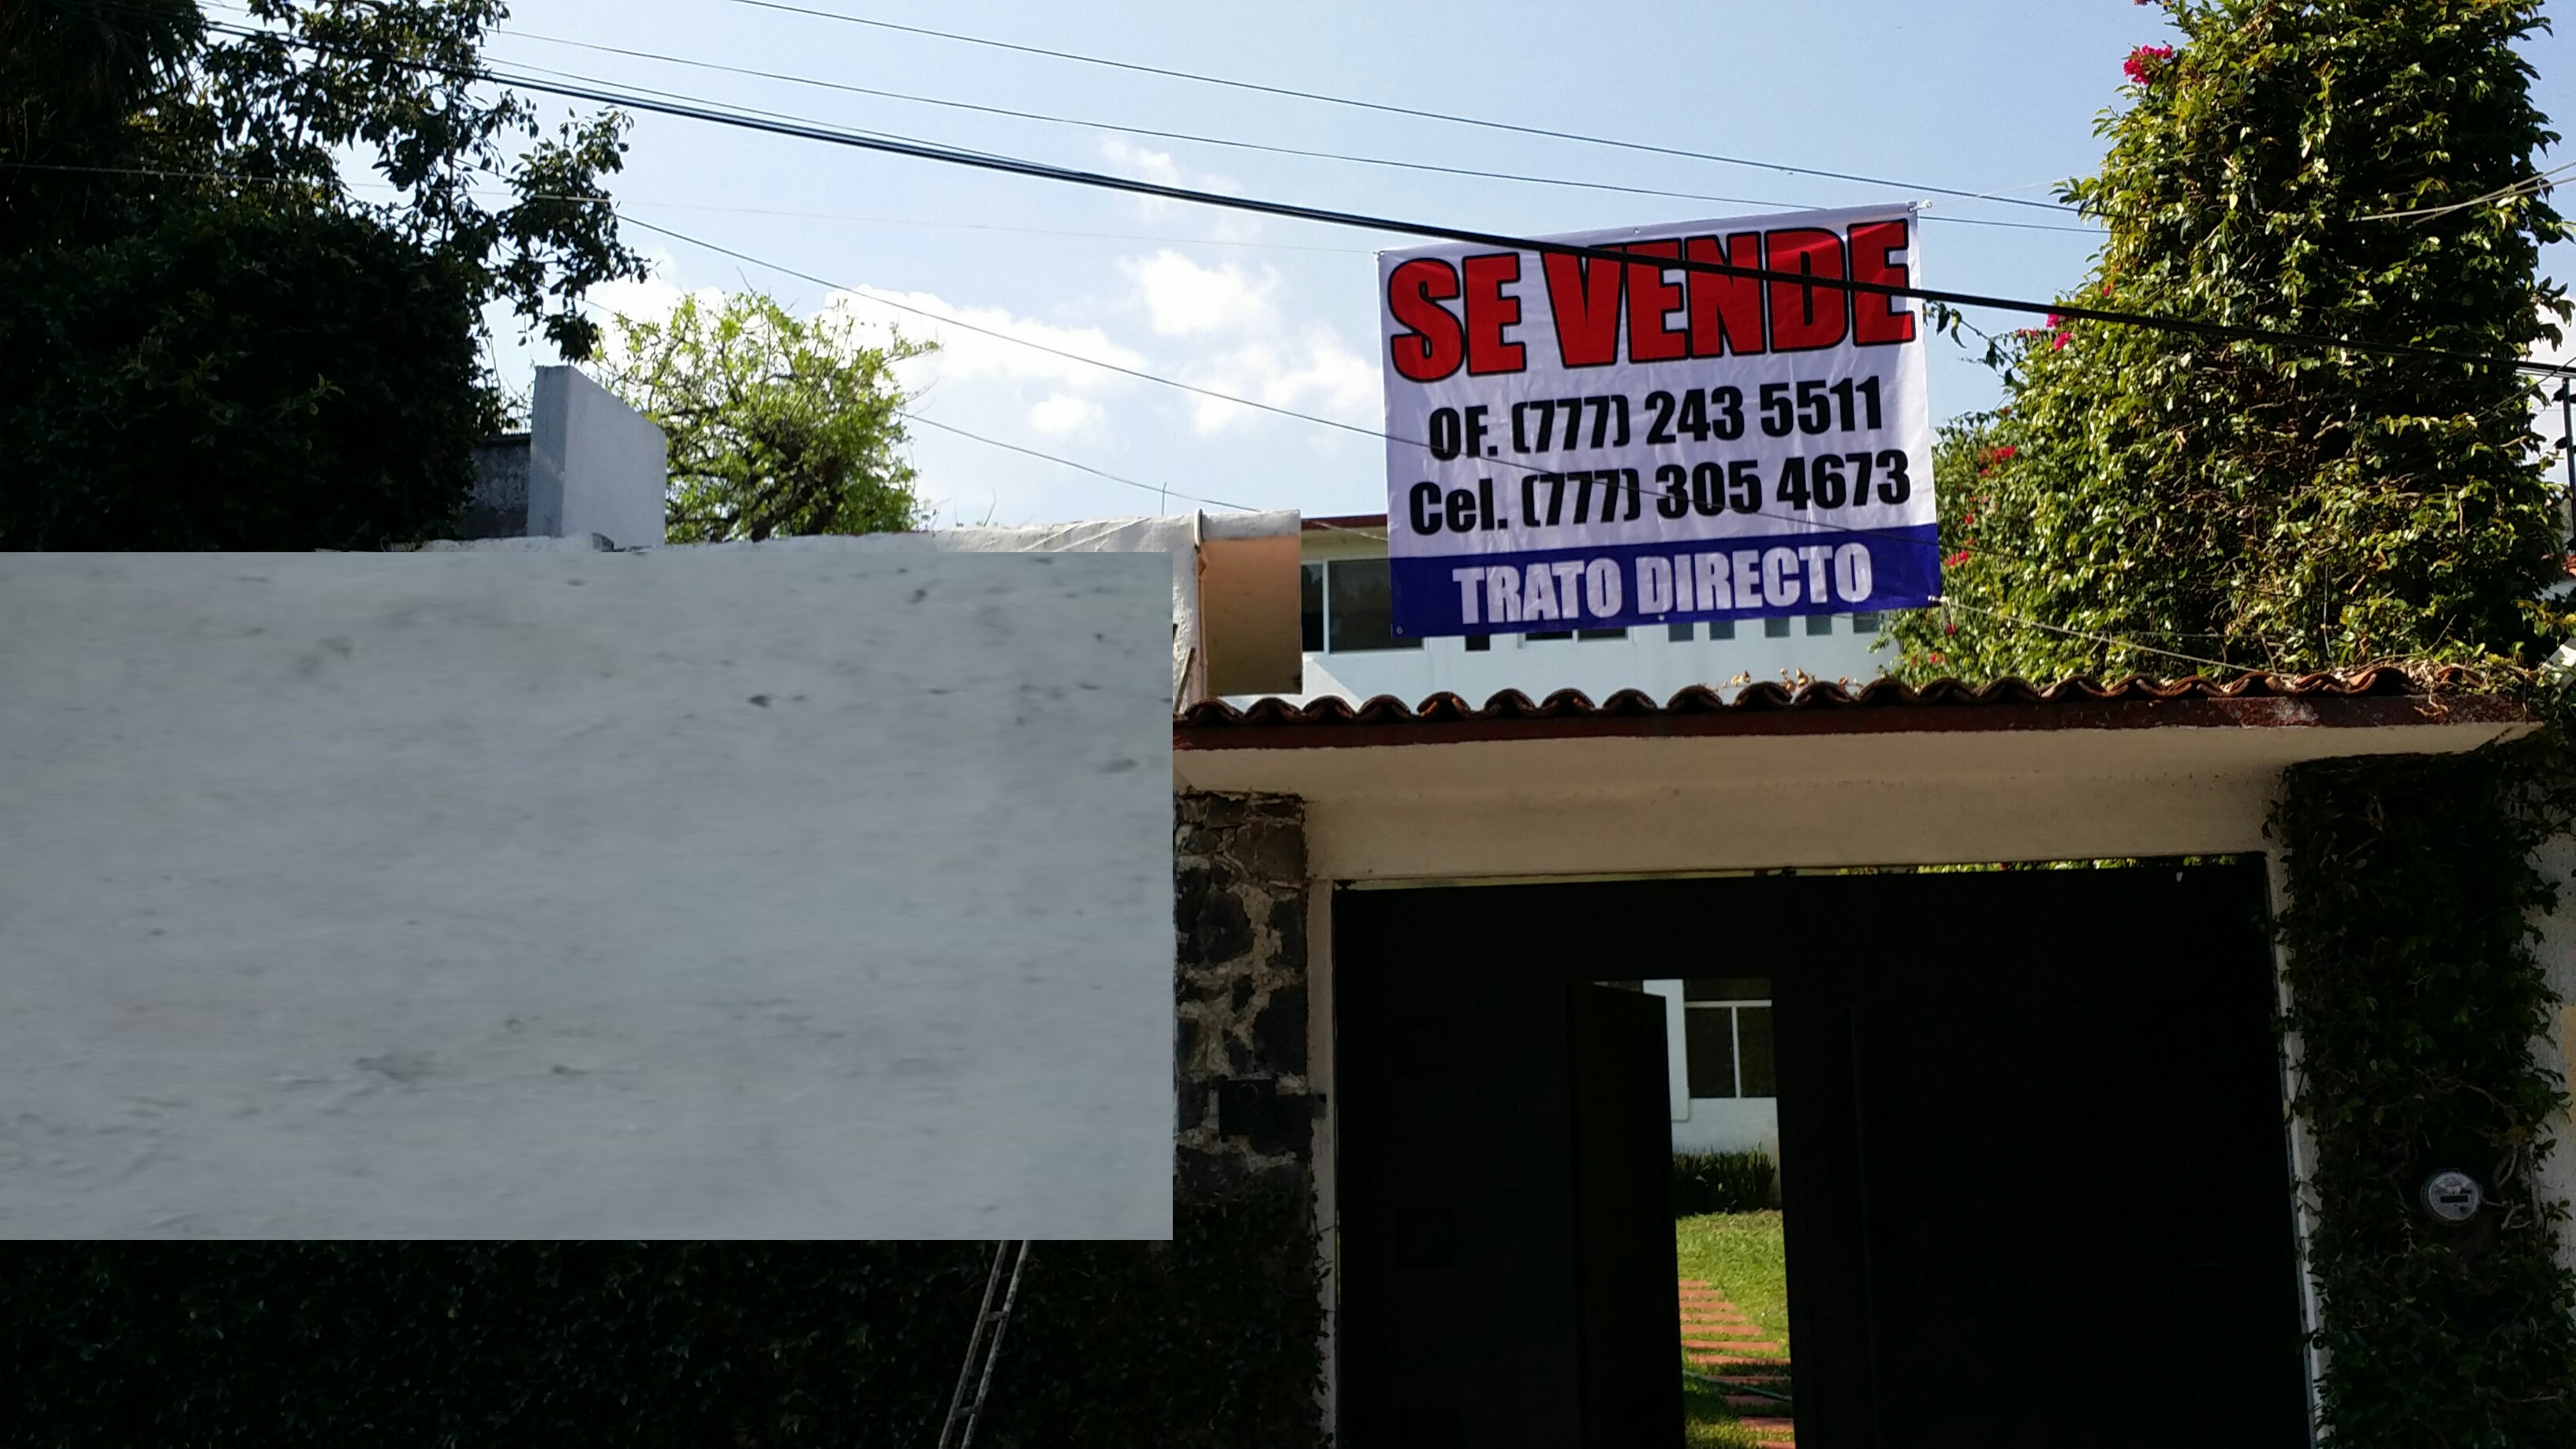 Casa en Venta en Jardines de Delicias